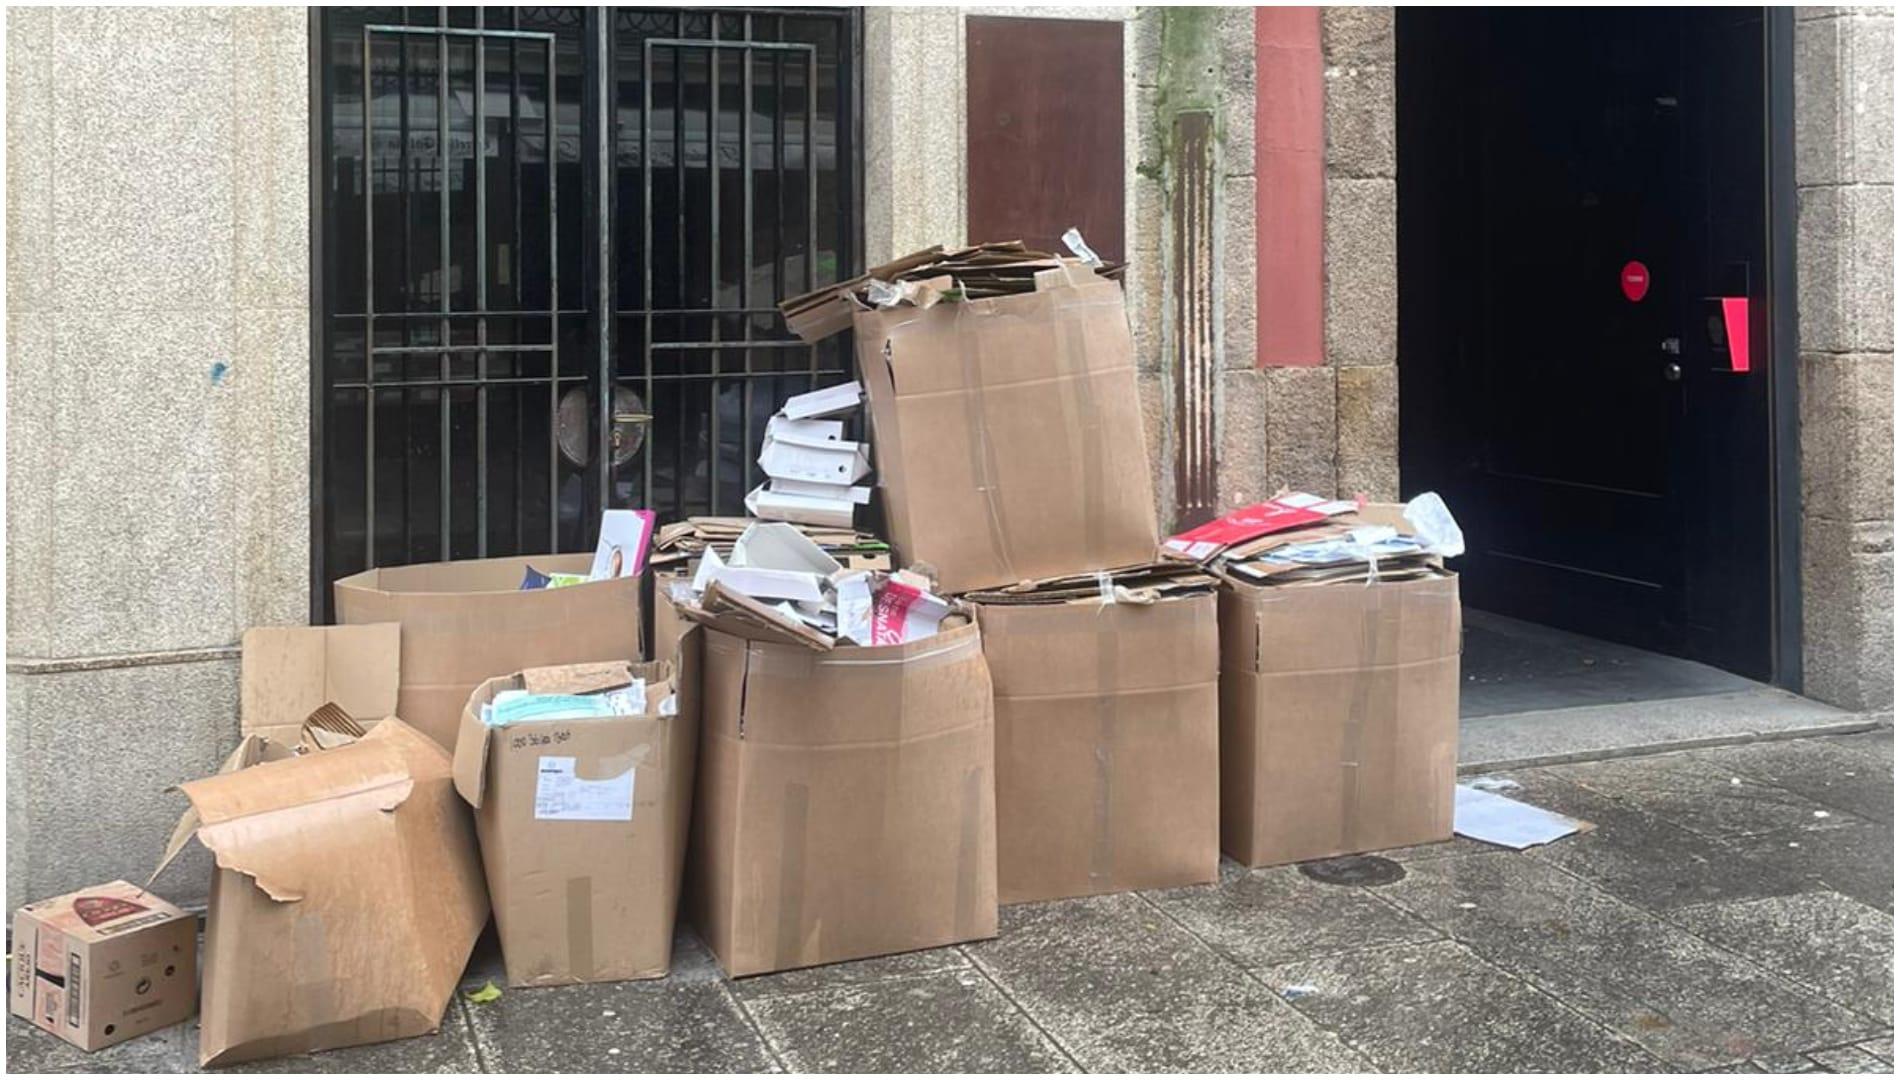 Cartón acumulado en A Coruña